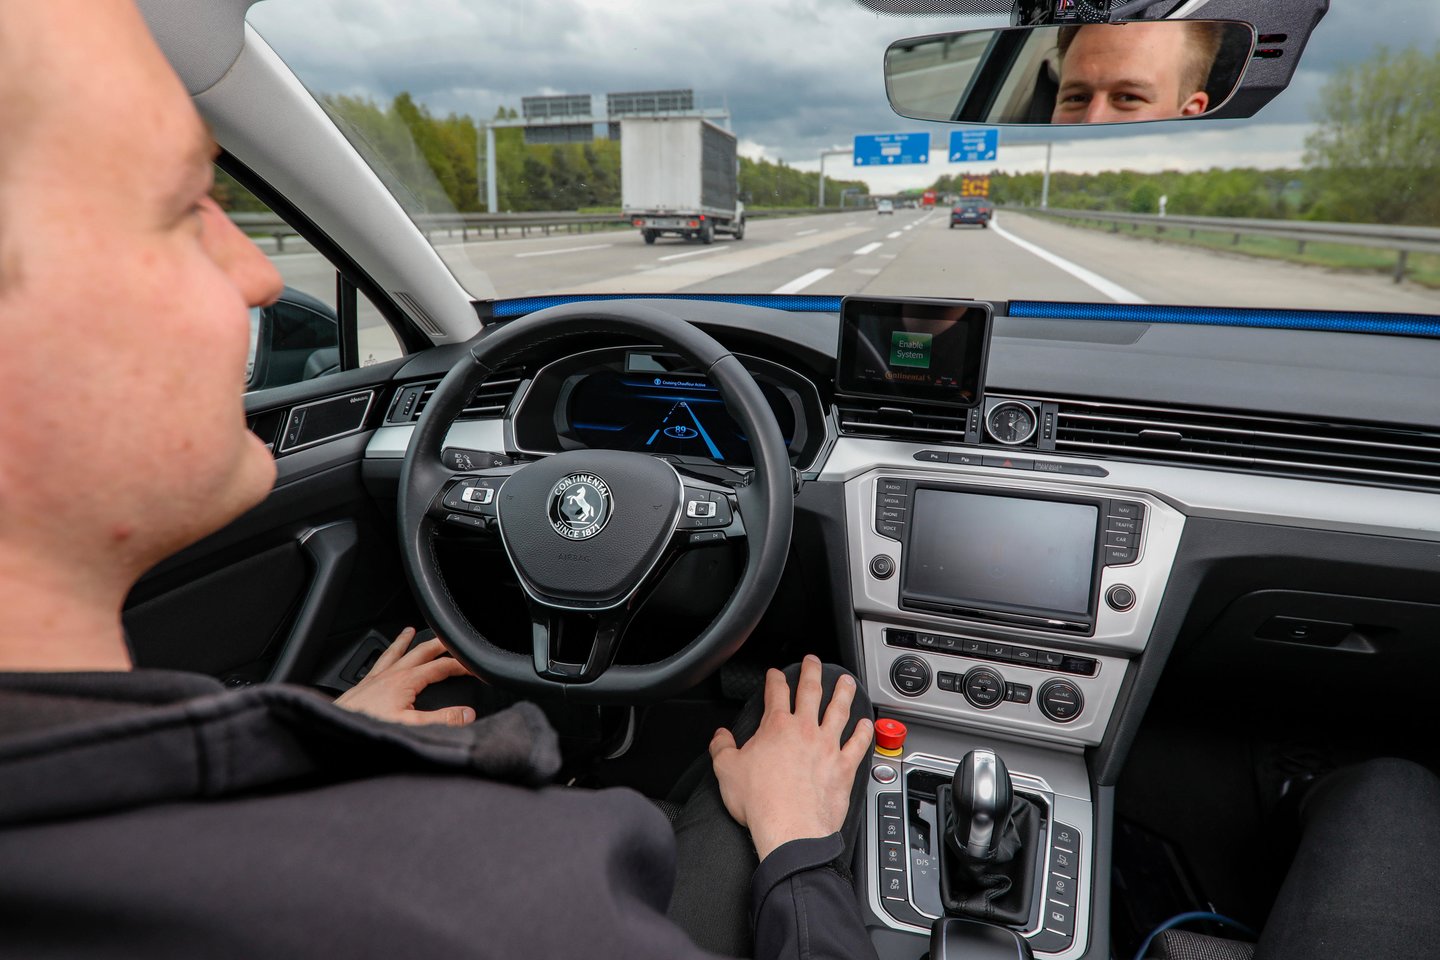  „Via Baltica“ galėtų būti naudojama autonominių automobilių testams.<br>Įmonės nuotr.